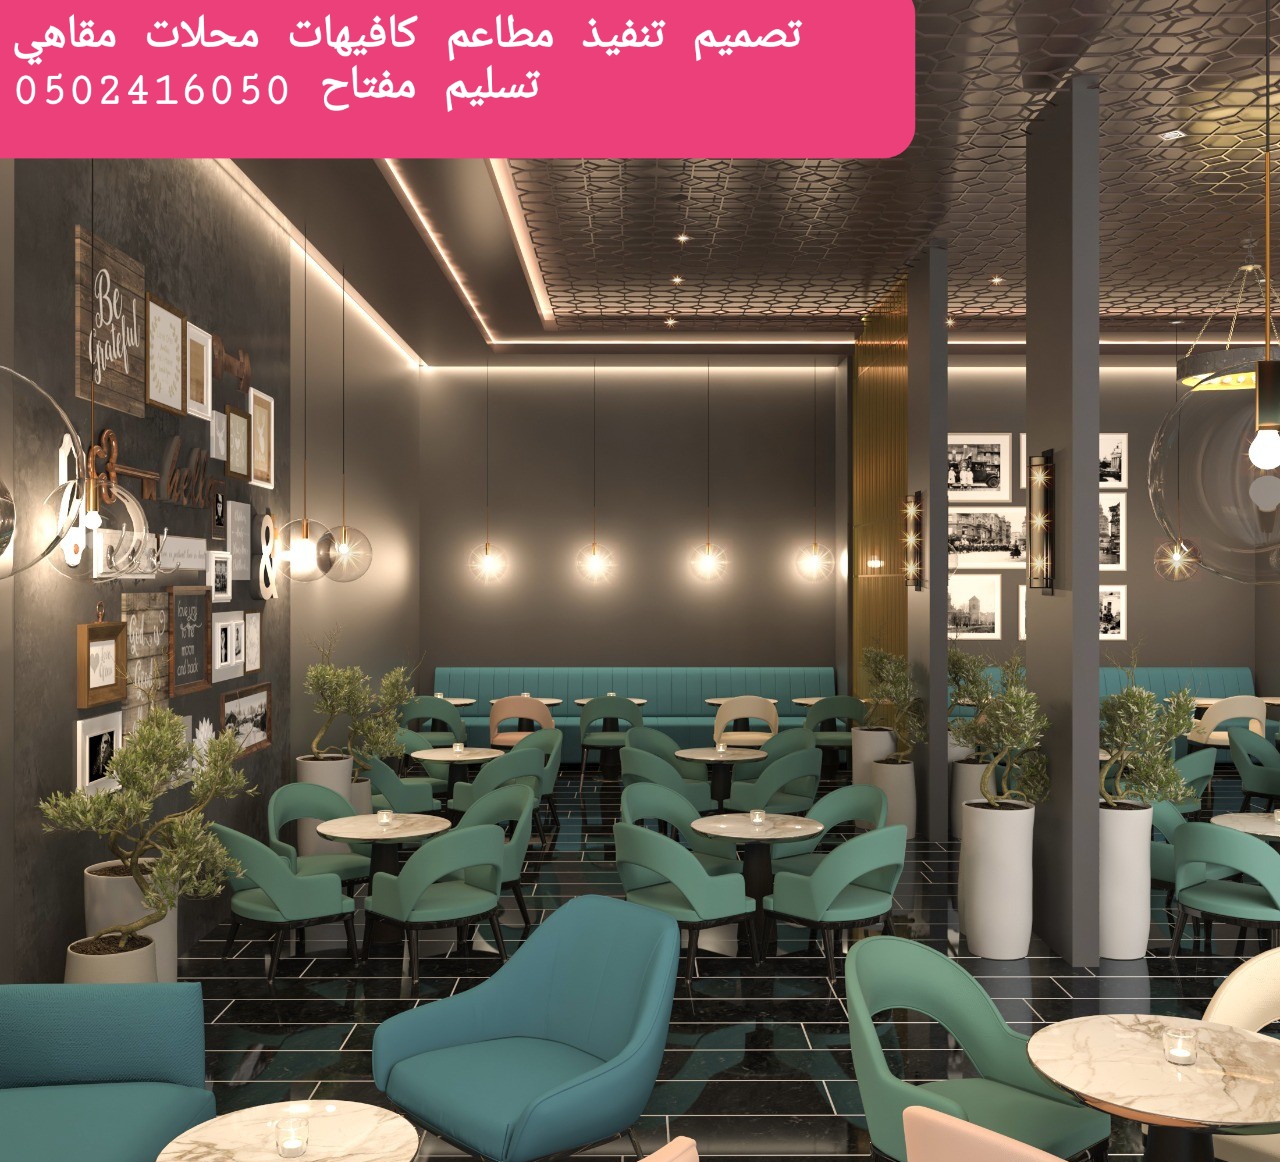 مكتب تصميم مطاعم في الرياض |مكتب تصميم مطاعم |تصميم ديكور مطاعم-